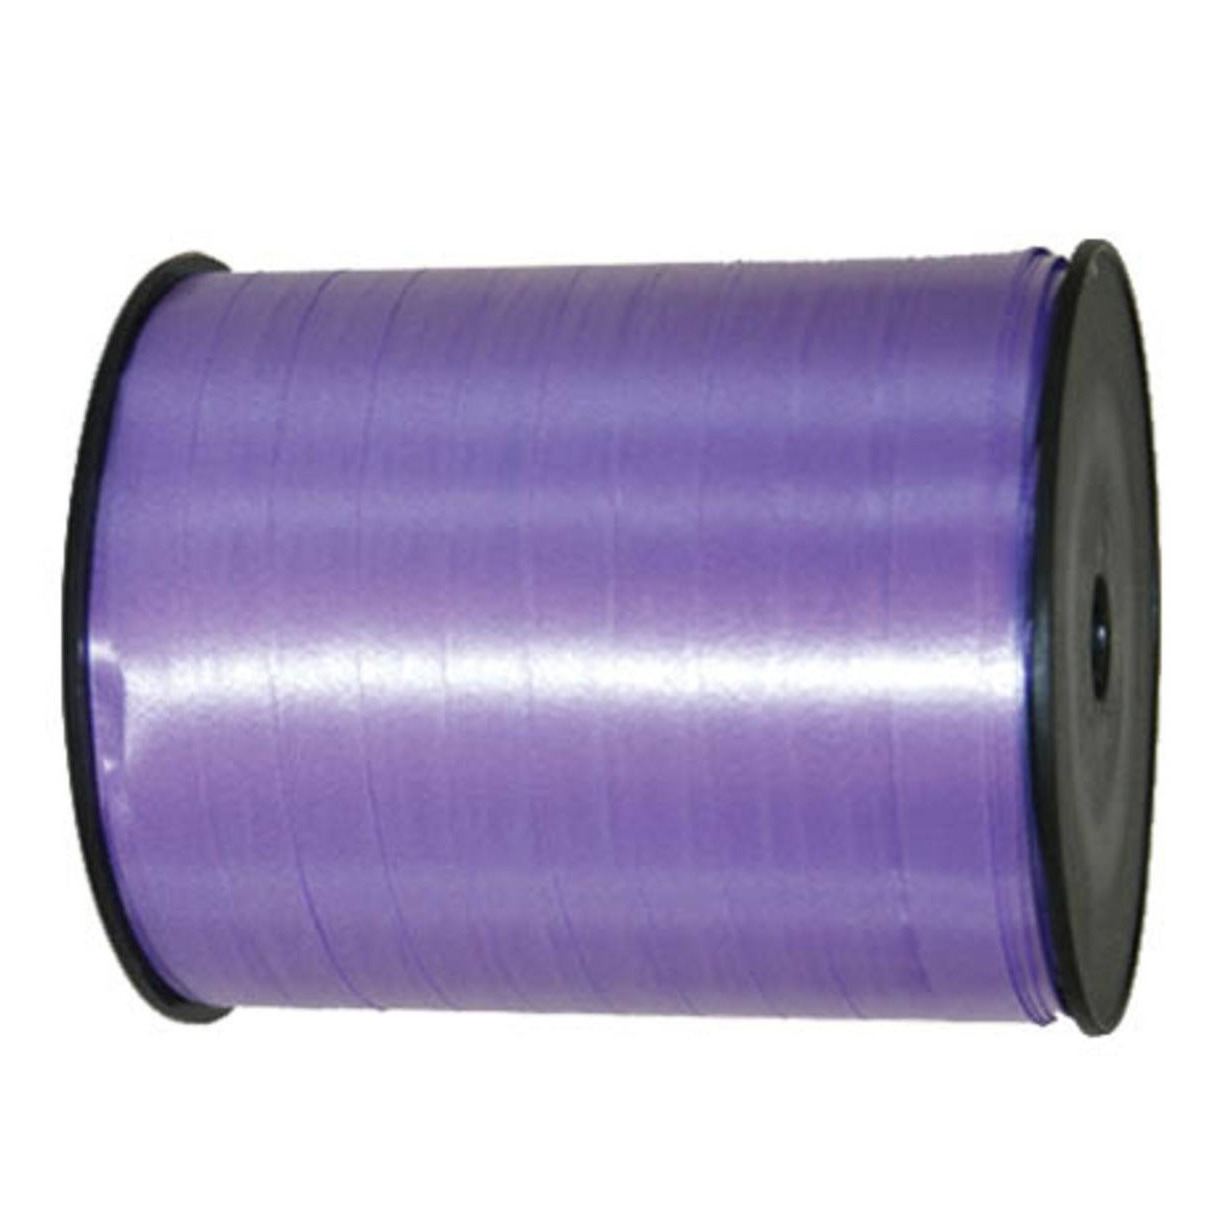 Cadeaulint/sierlint in de kleur lavendel paars 5 mm x 500 meter